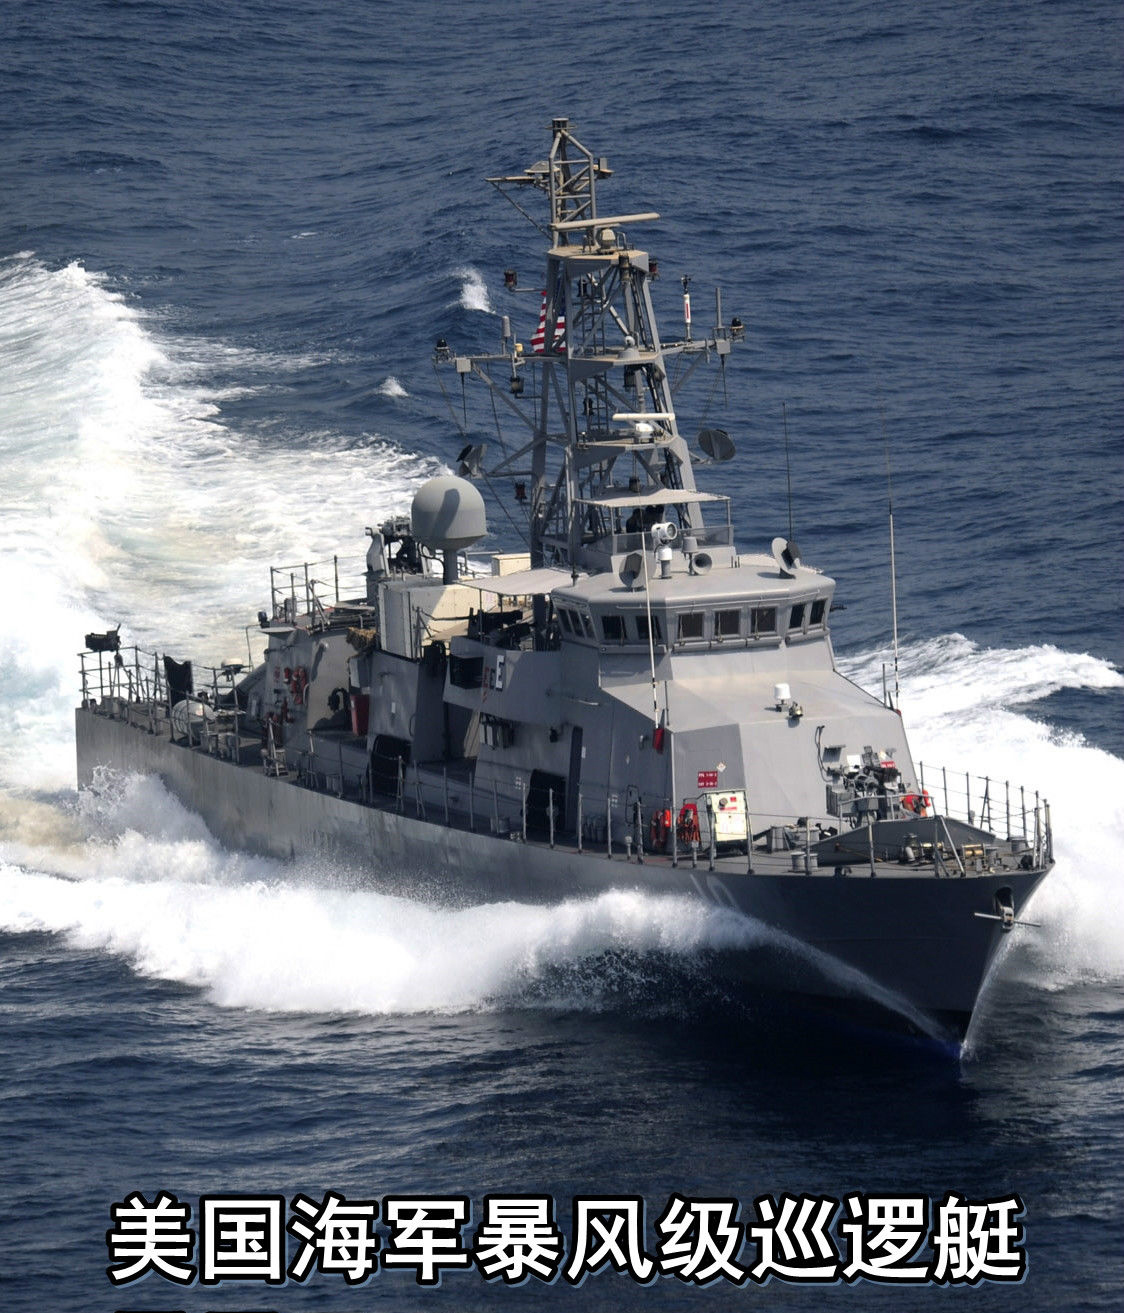 图注:美国海军暴风级制导导弹巡逻艇摩洛哥皇家海军编制1万人,装备有